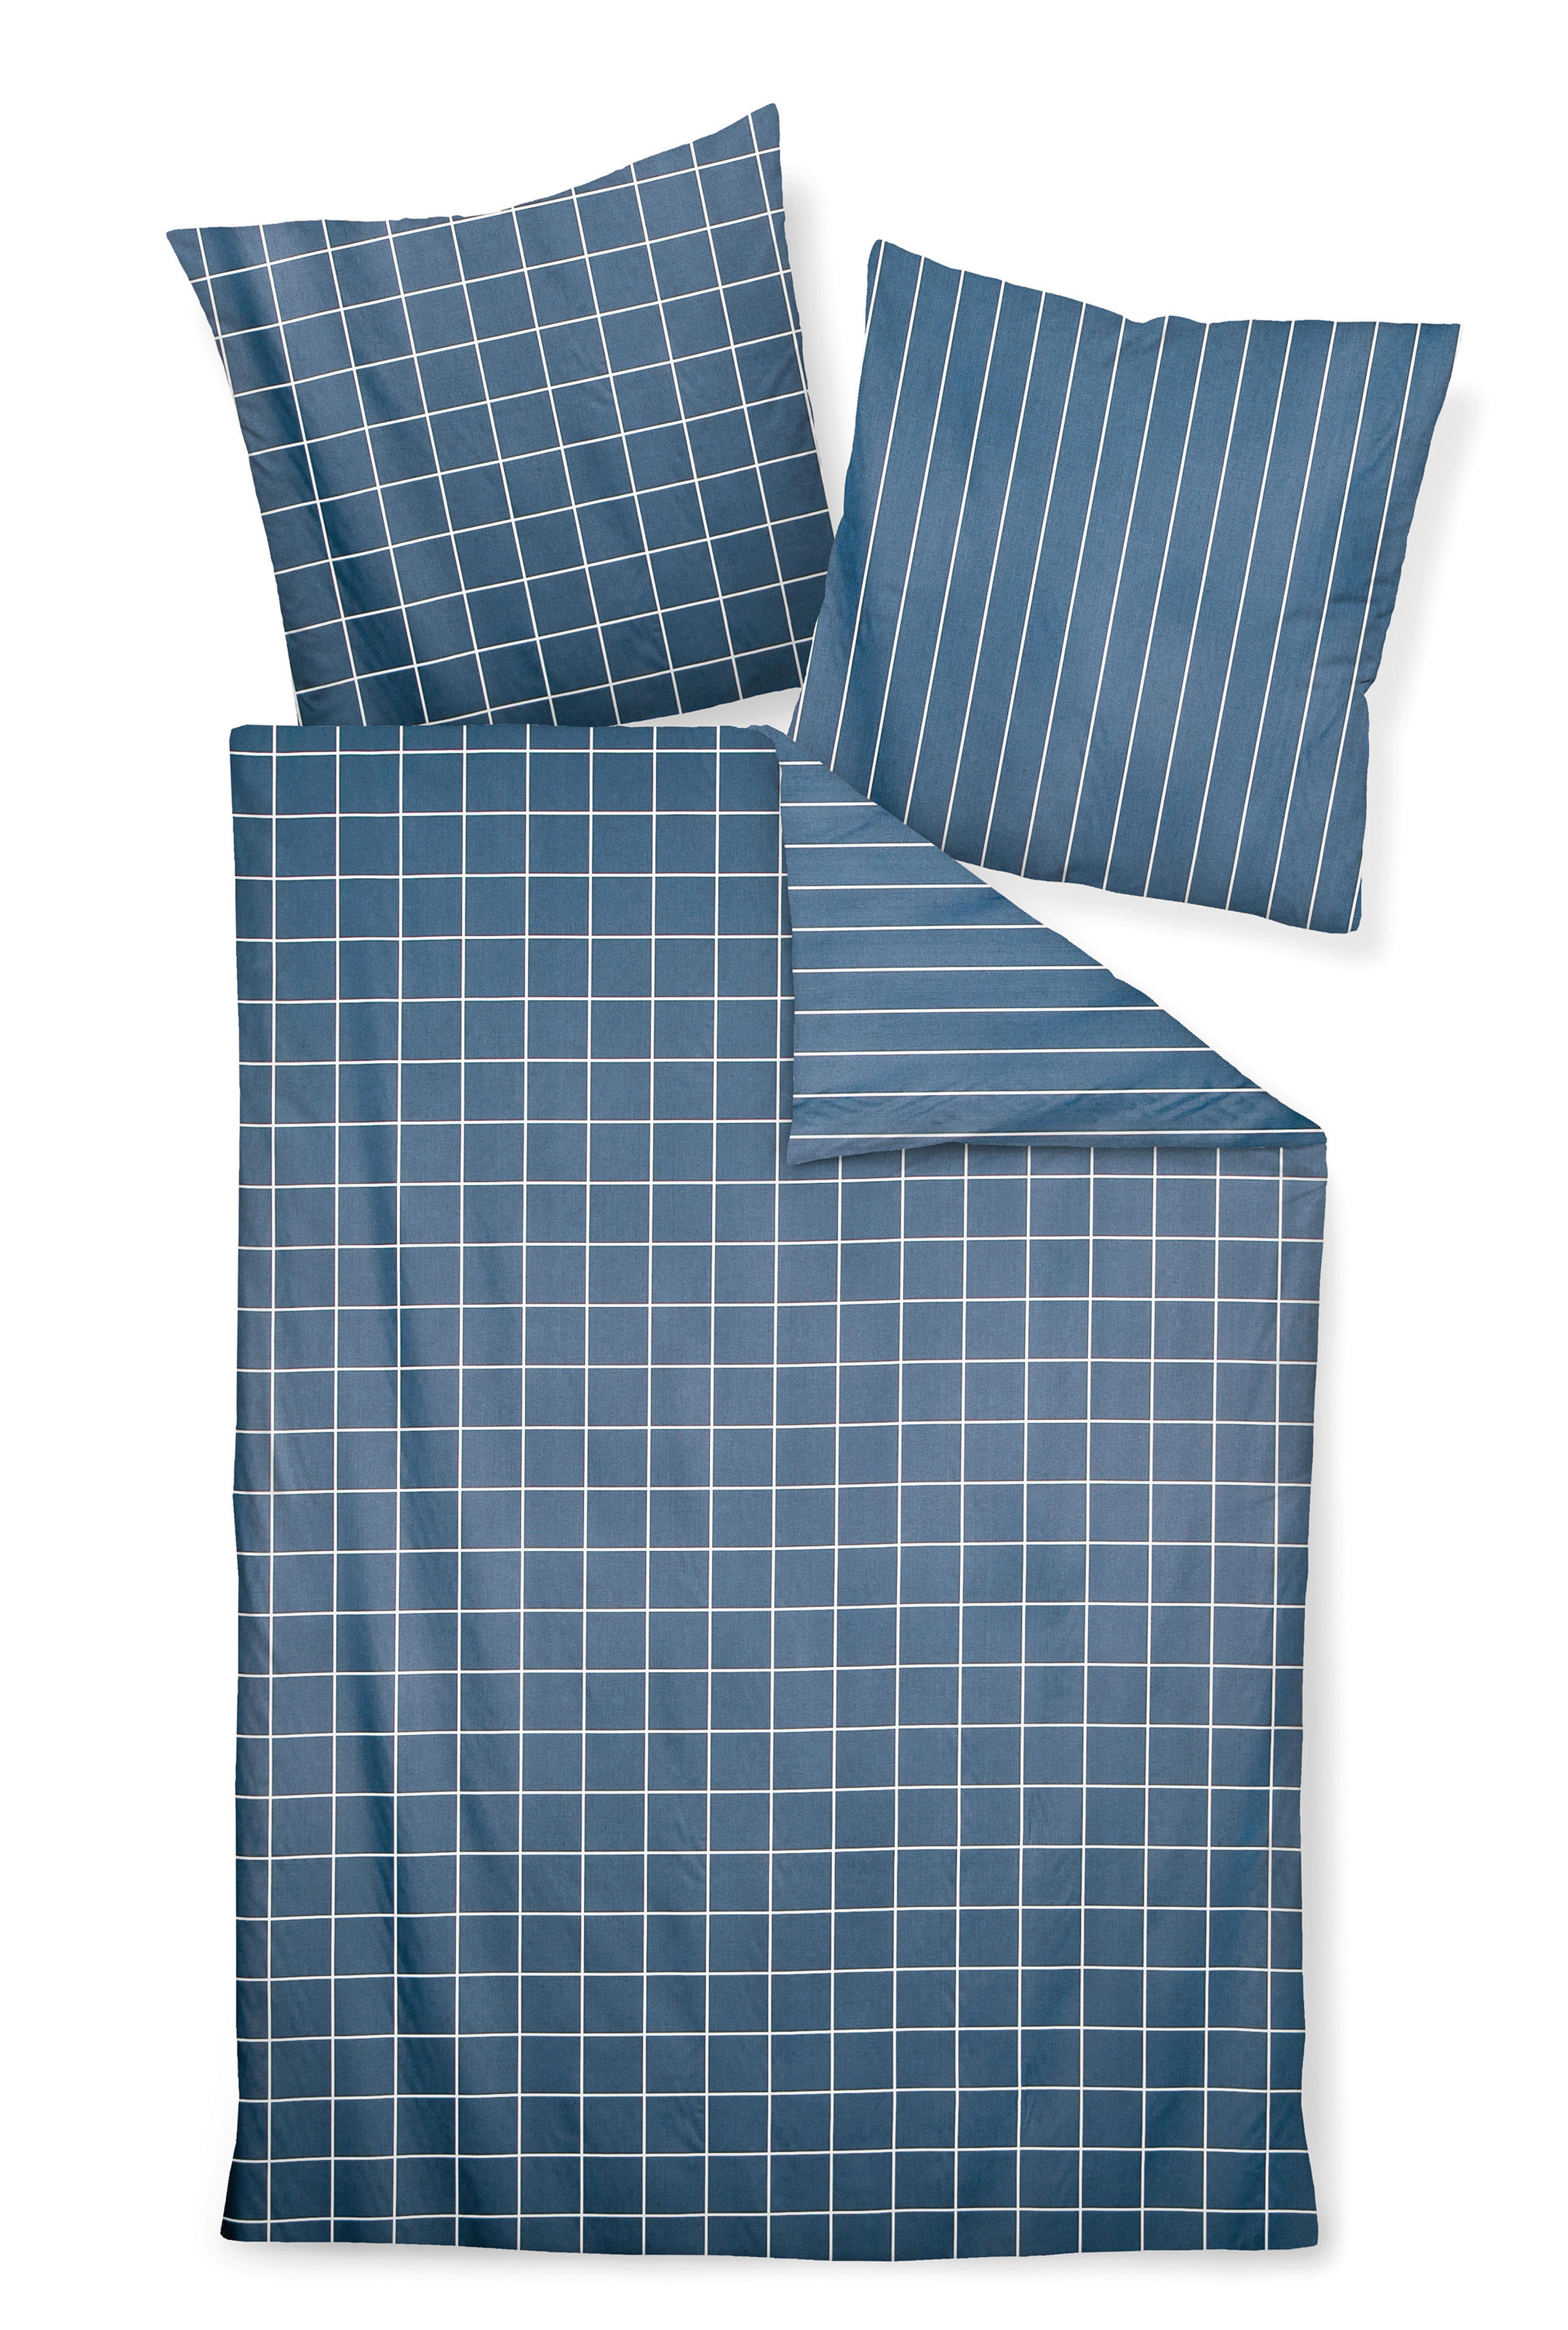 WENDEBETTWÄSCHE Makosatin  - Türkis/Blau, Basics, Textil (135/200cm) - Janine